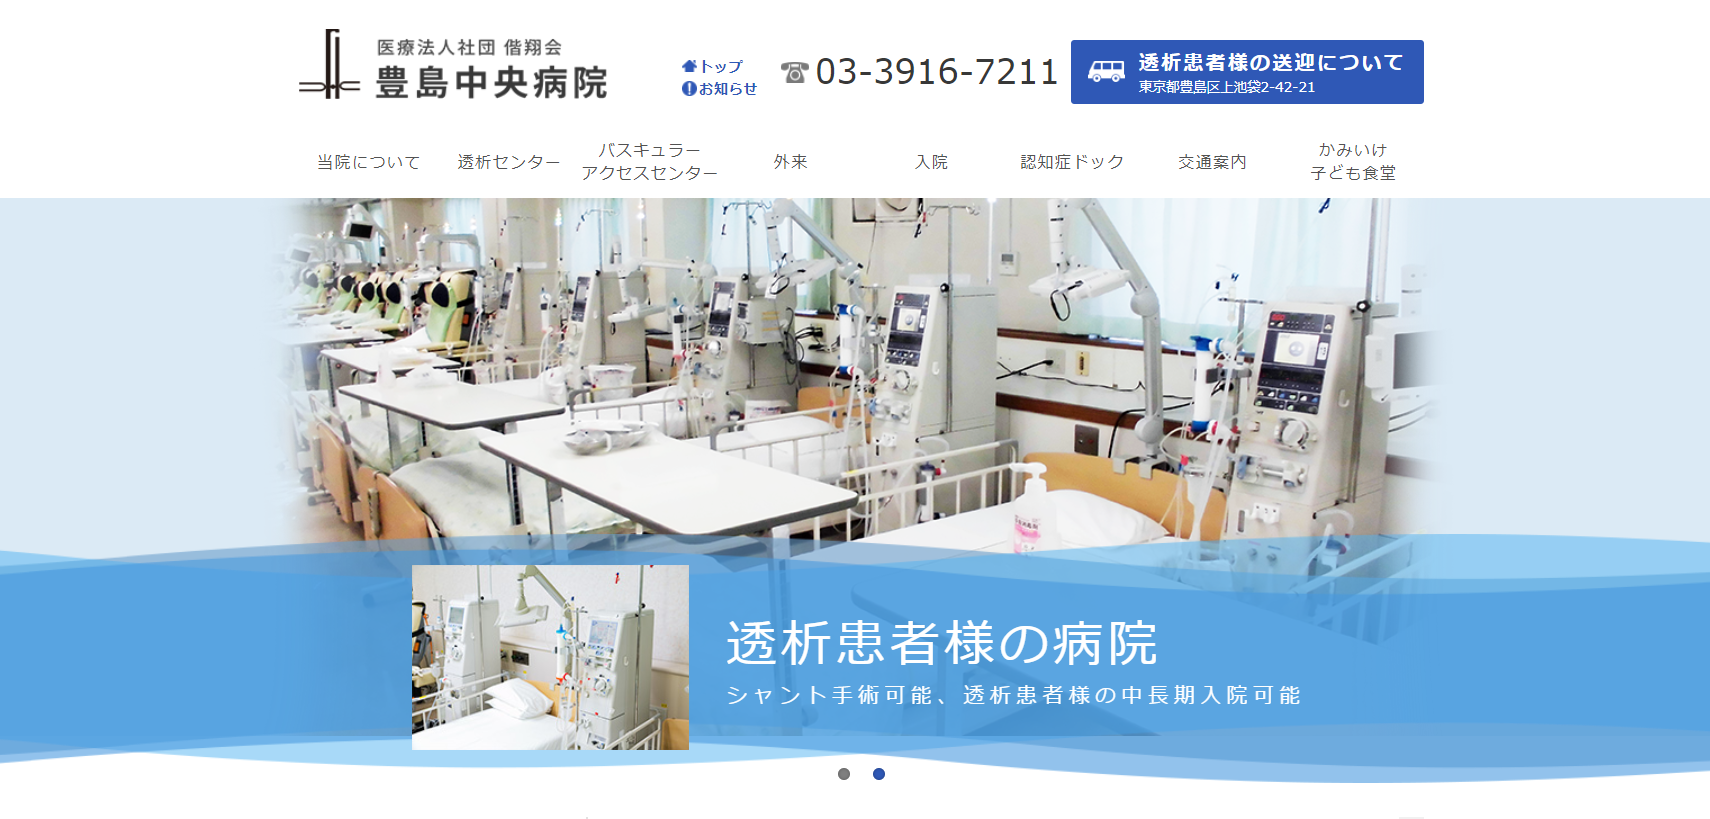 医療法人社団偕翔会 豊島中央病院のホームページ制作